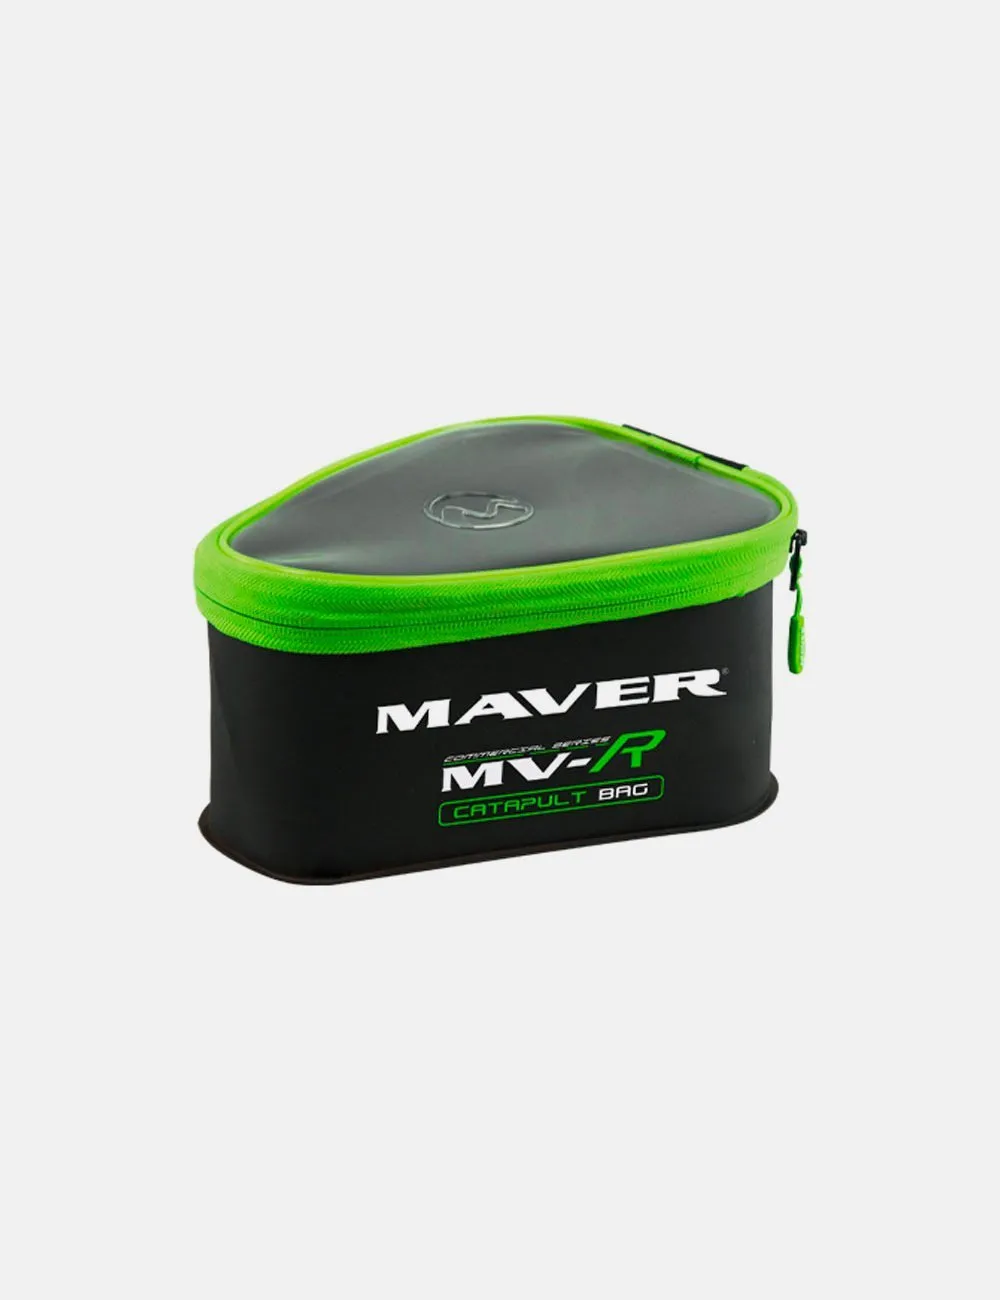 maver MV-R Eva Catapult Bag 30x22x20cm – Prota Fionde in Eva 06109018.webp